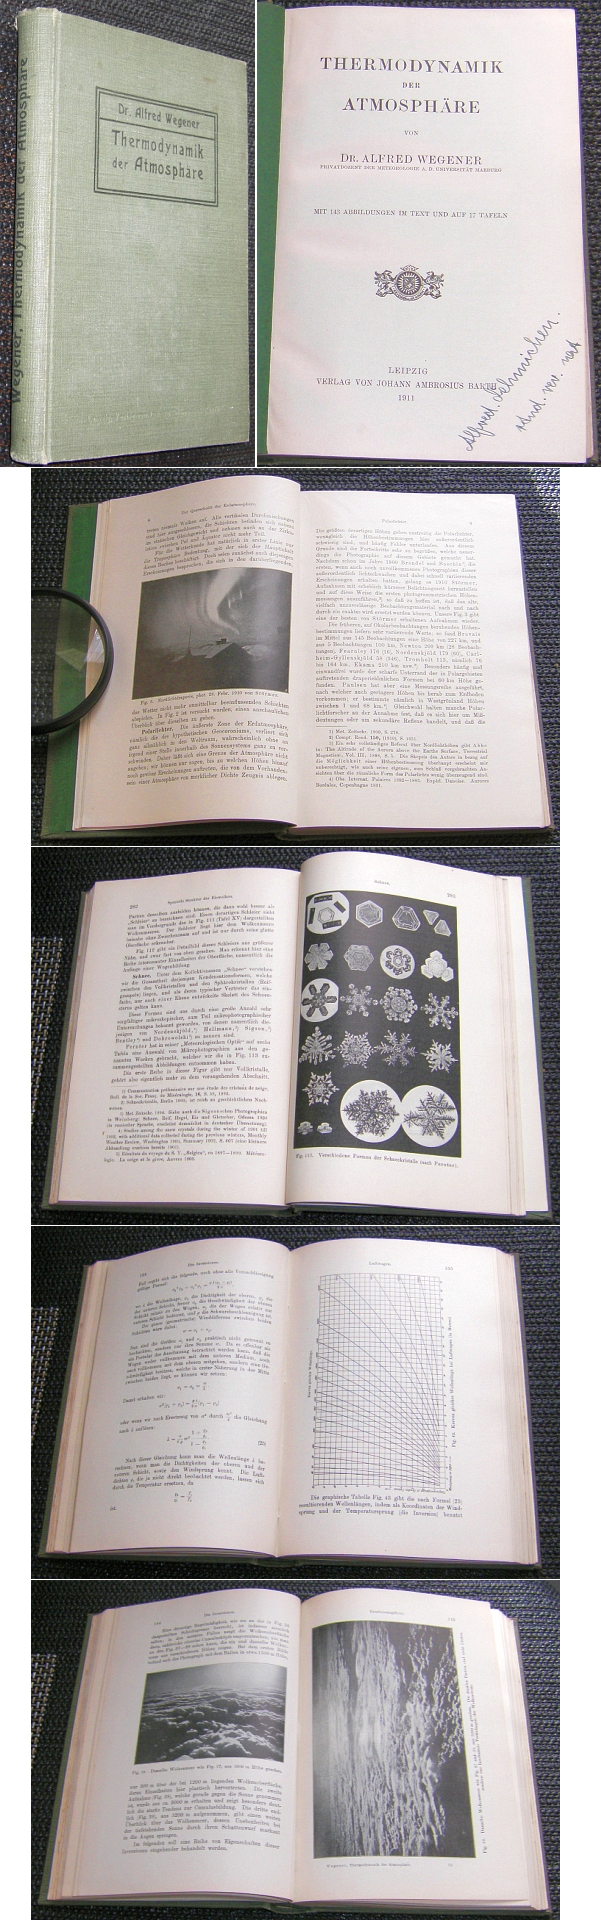 Buch: THERMODYNAMIK DER ATMOSPHRE Dr. Alfred Wegener 1911 - 110,00 Eur